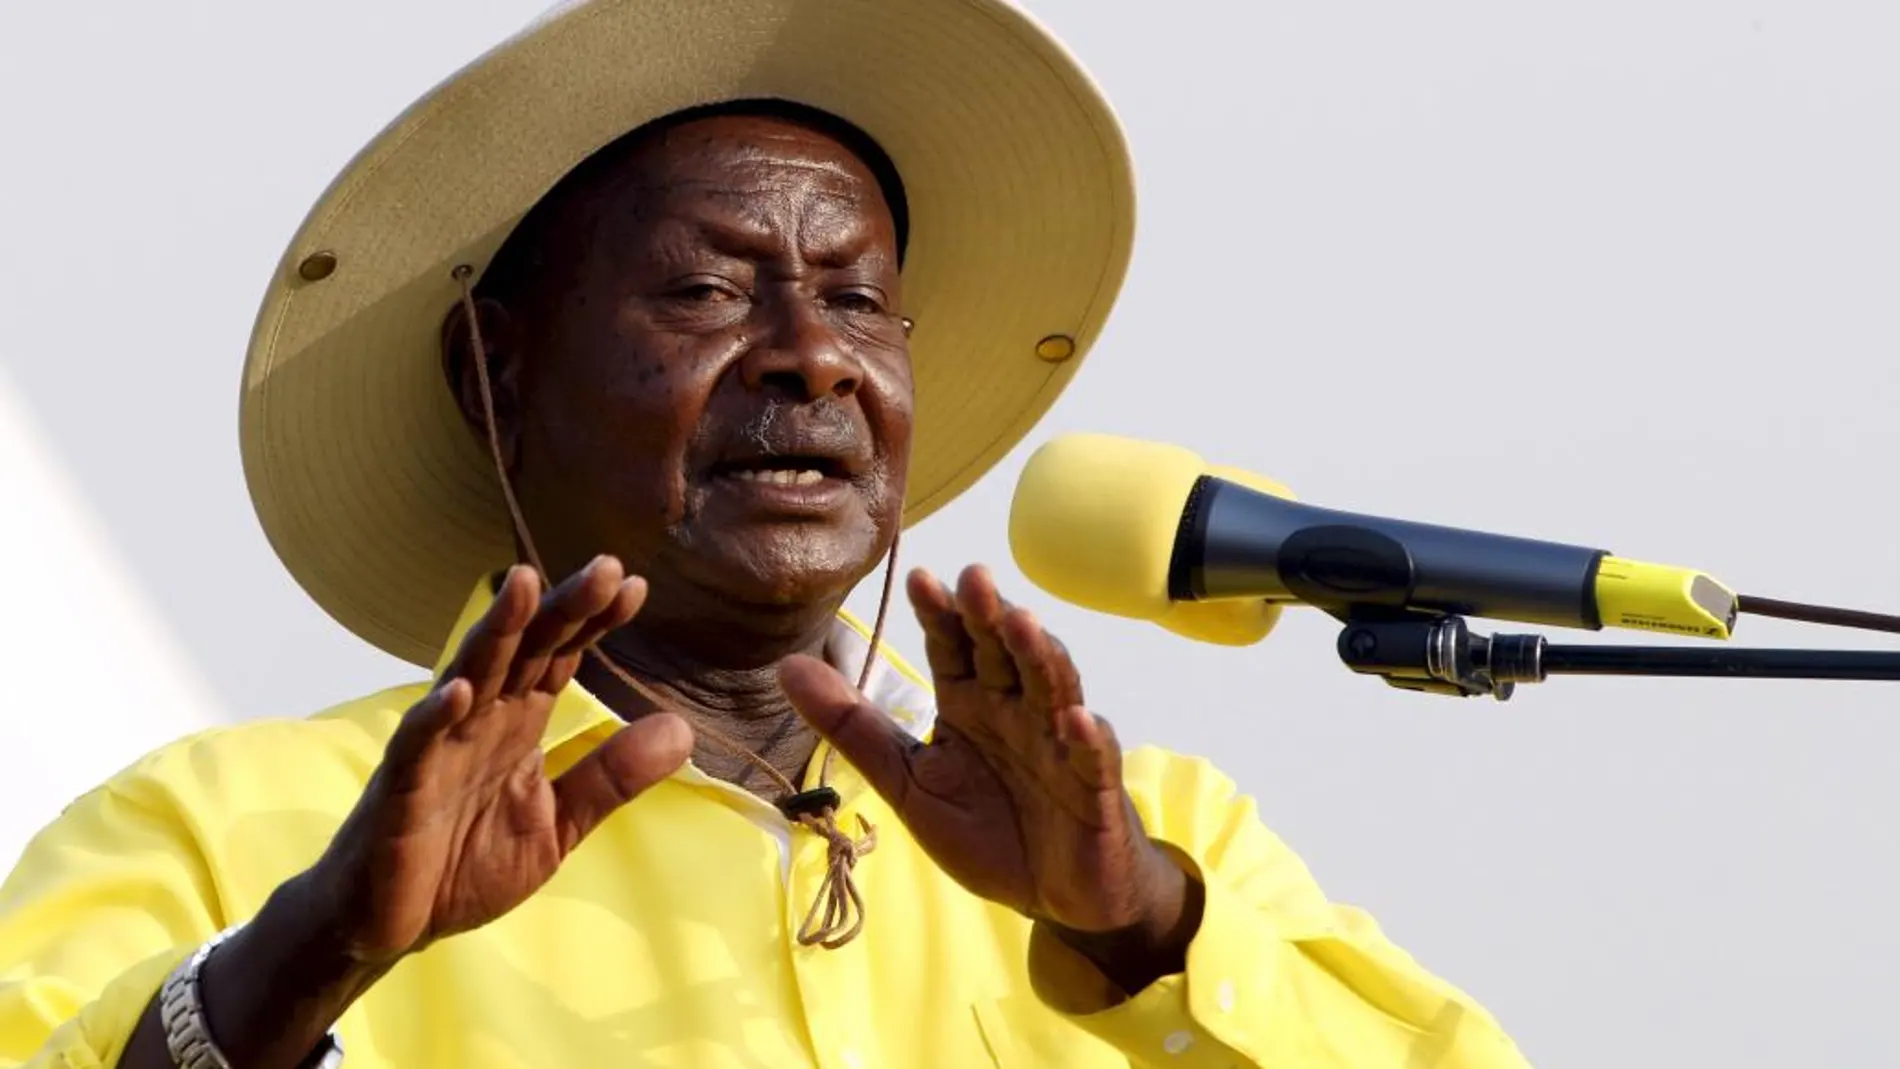 El presidente Yoweri Museveni se impuso en las elecciones del 18 de febrero